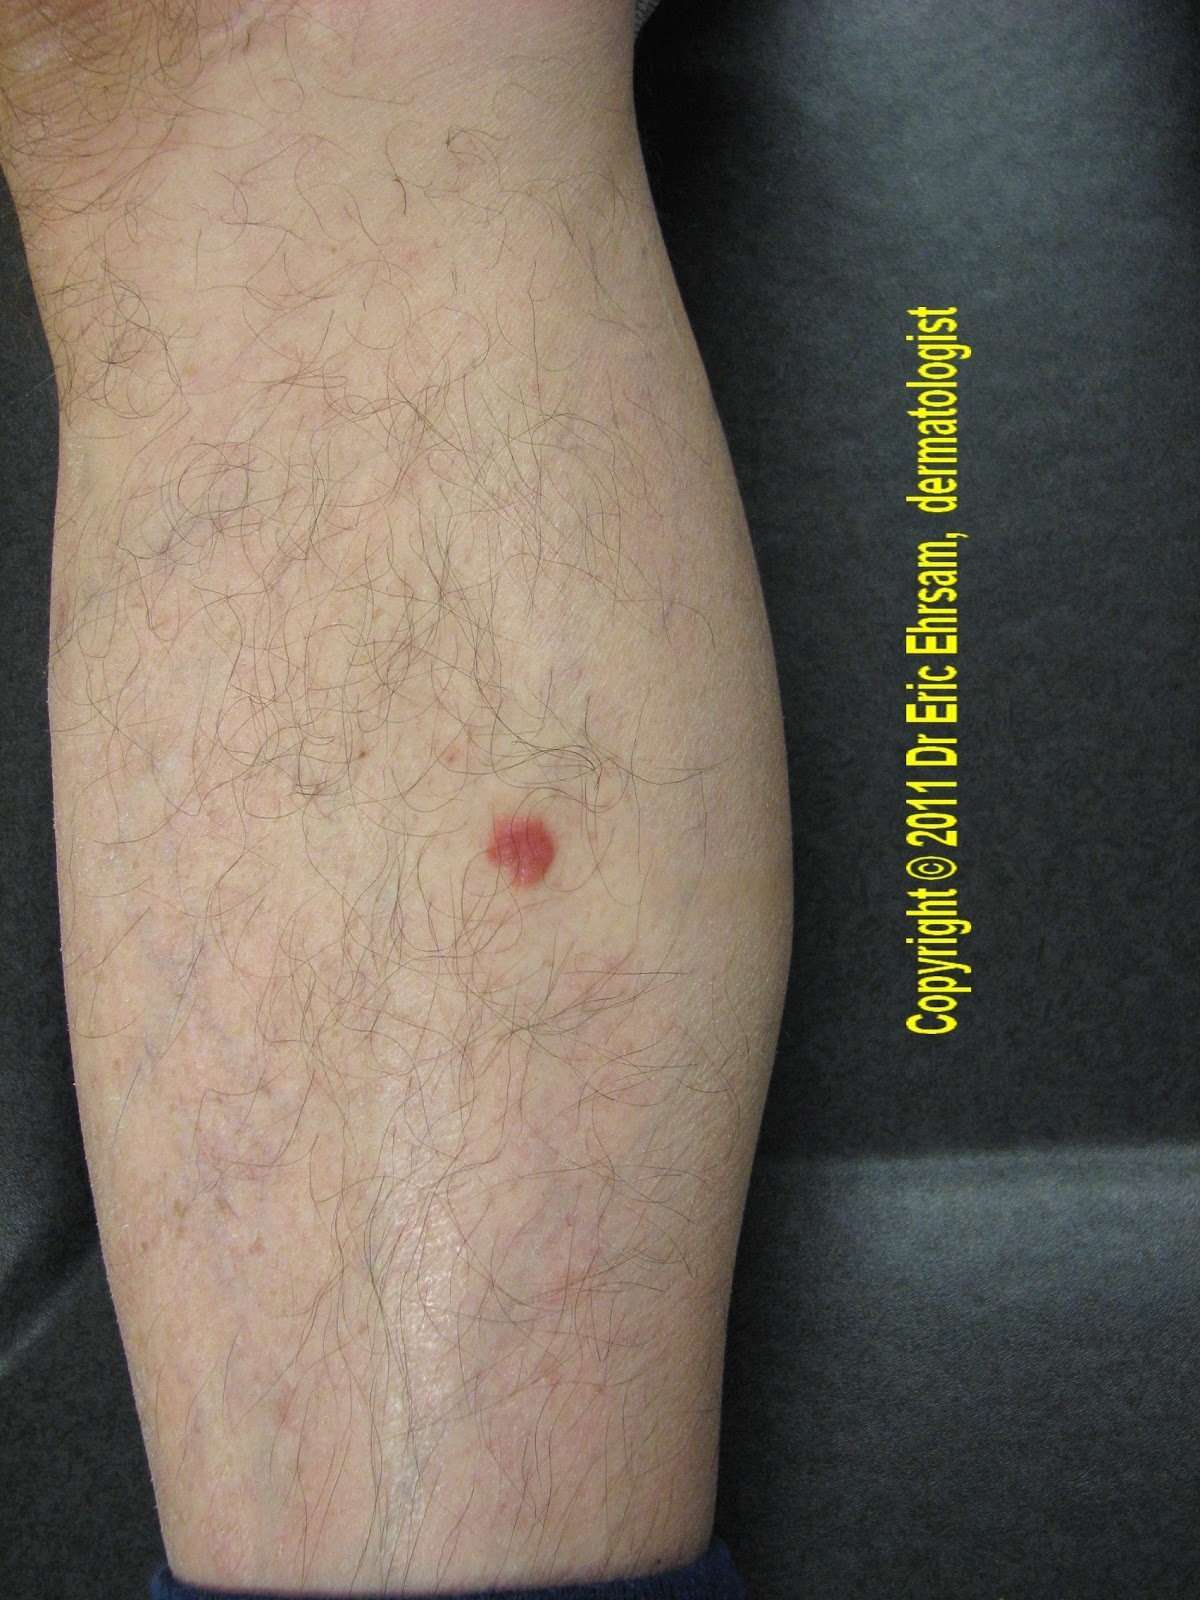 dermoscopy: A red tumor on a leg